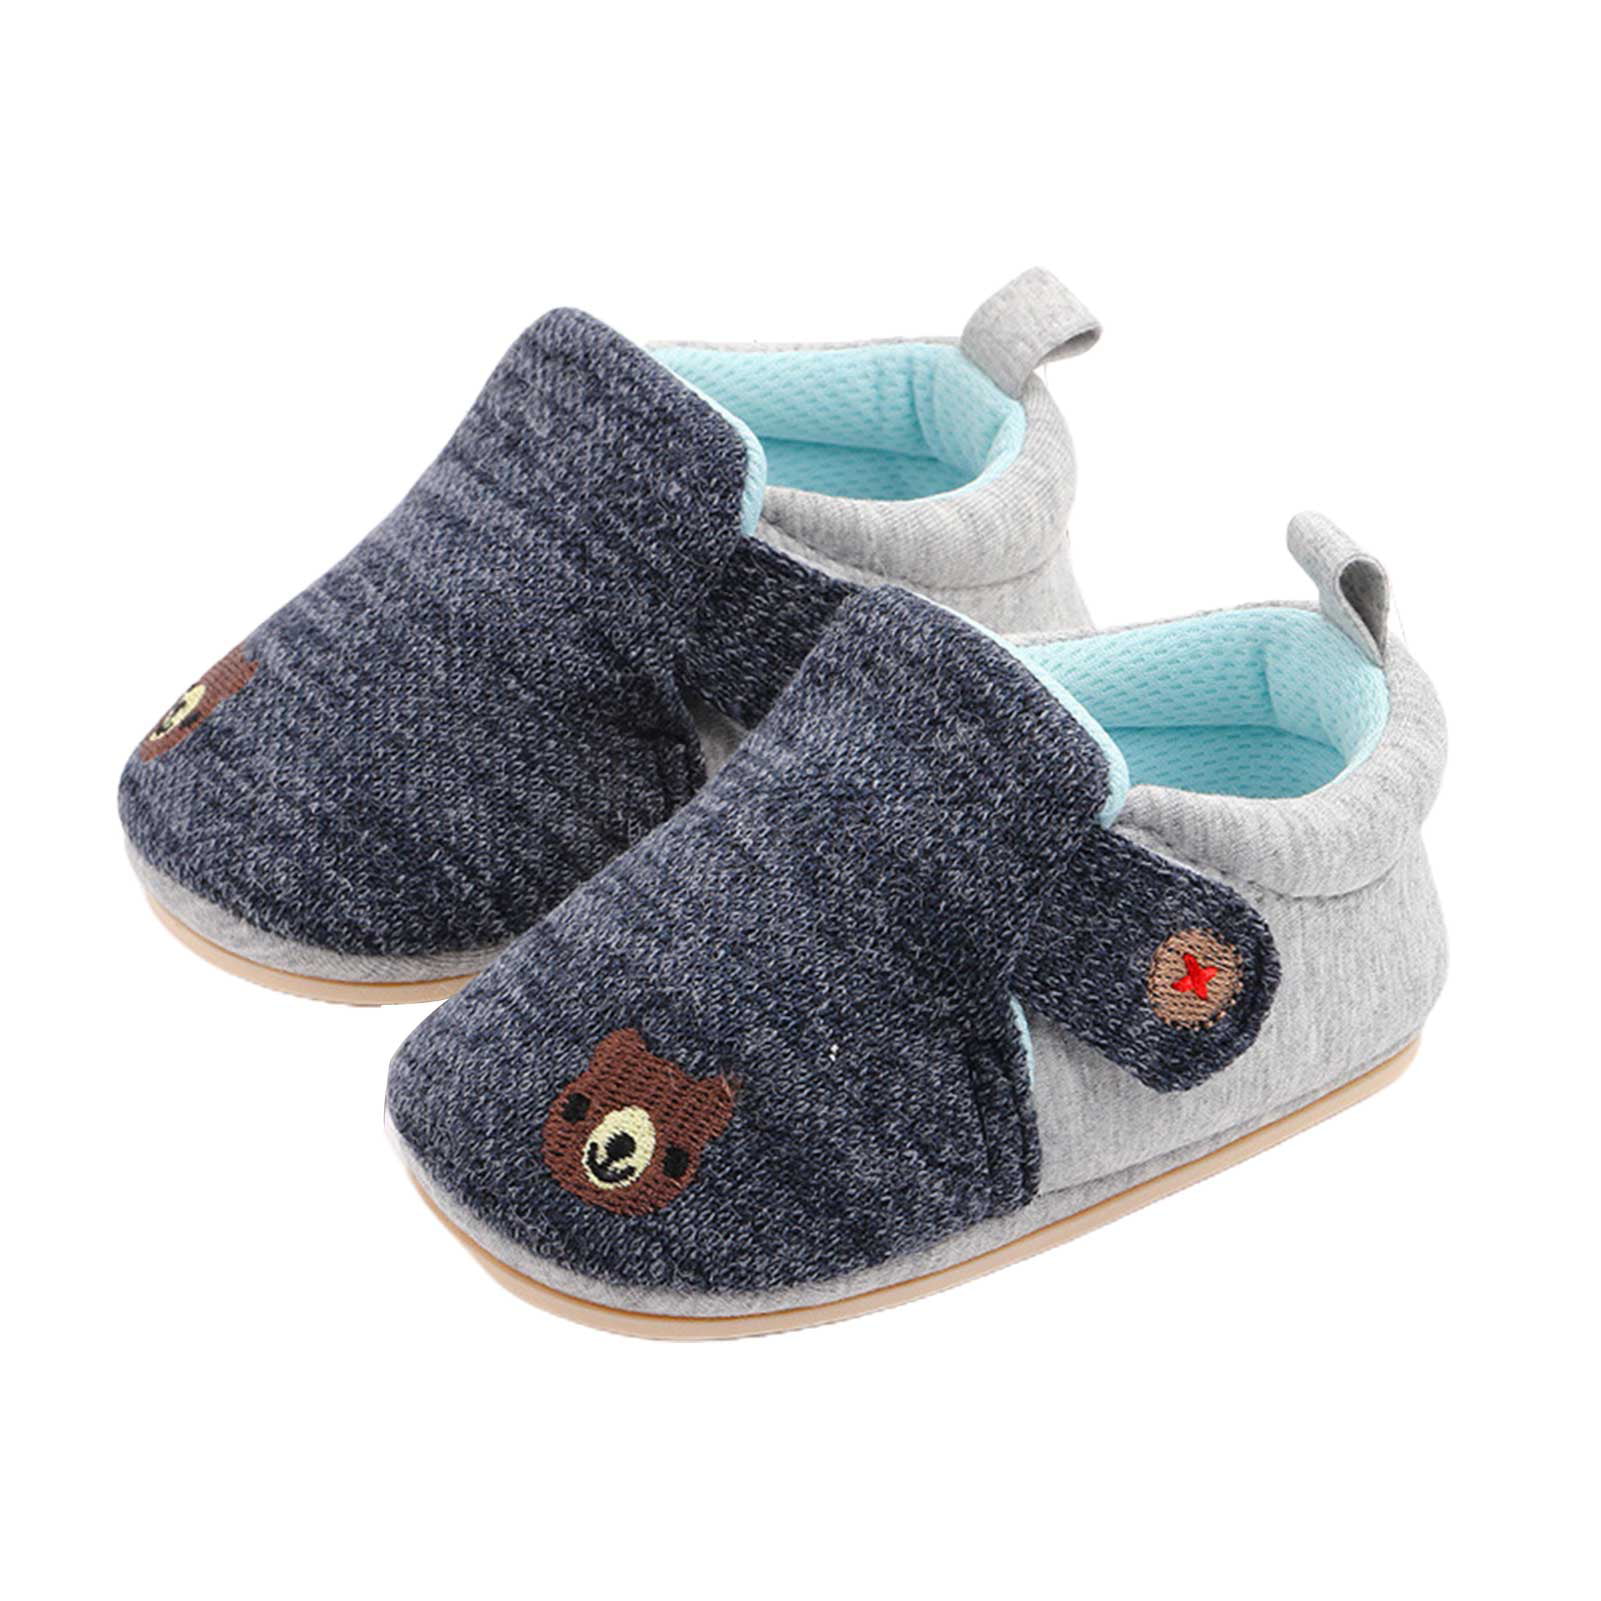 Kids' Baby Toddler Anti-slip Slippers Socks Baby Boys Girls Shoes Spring Summer 